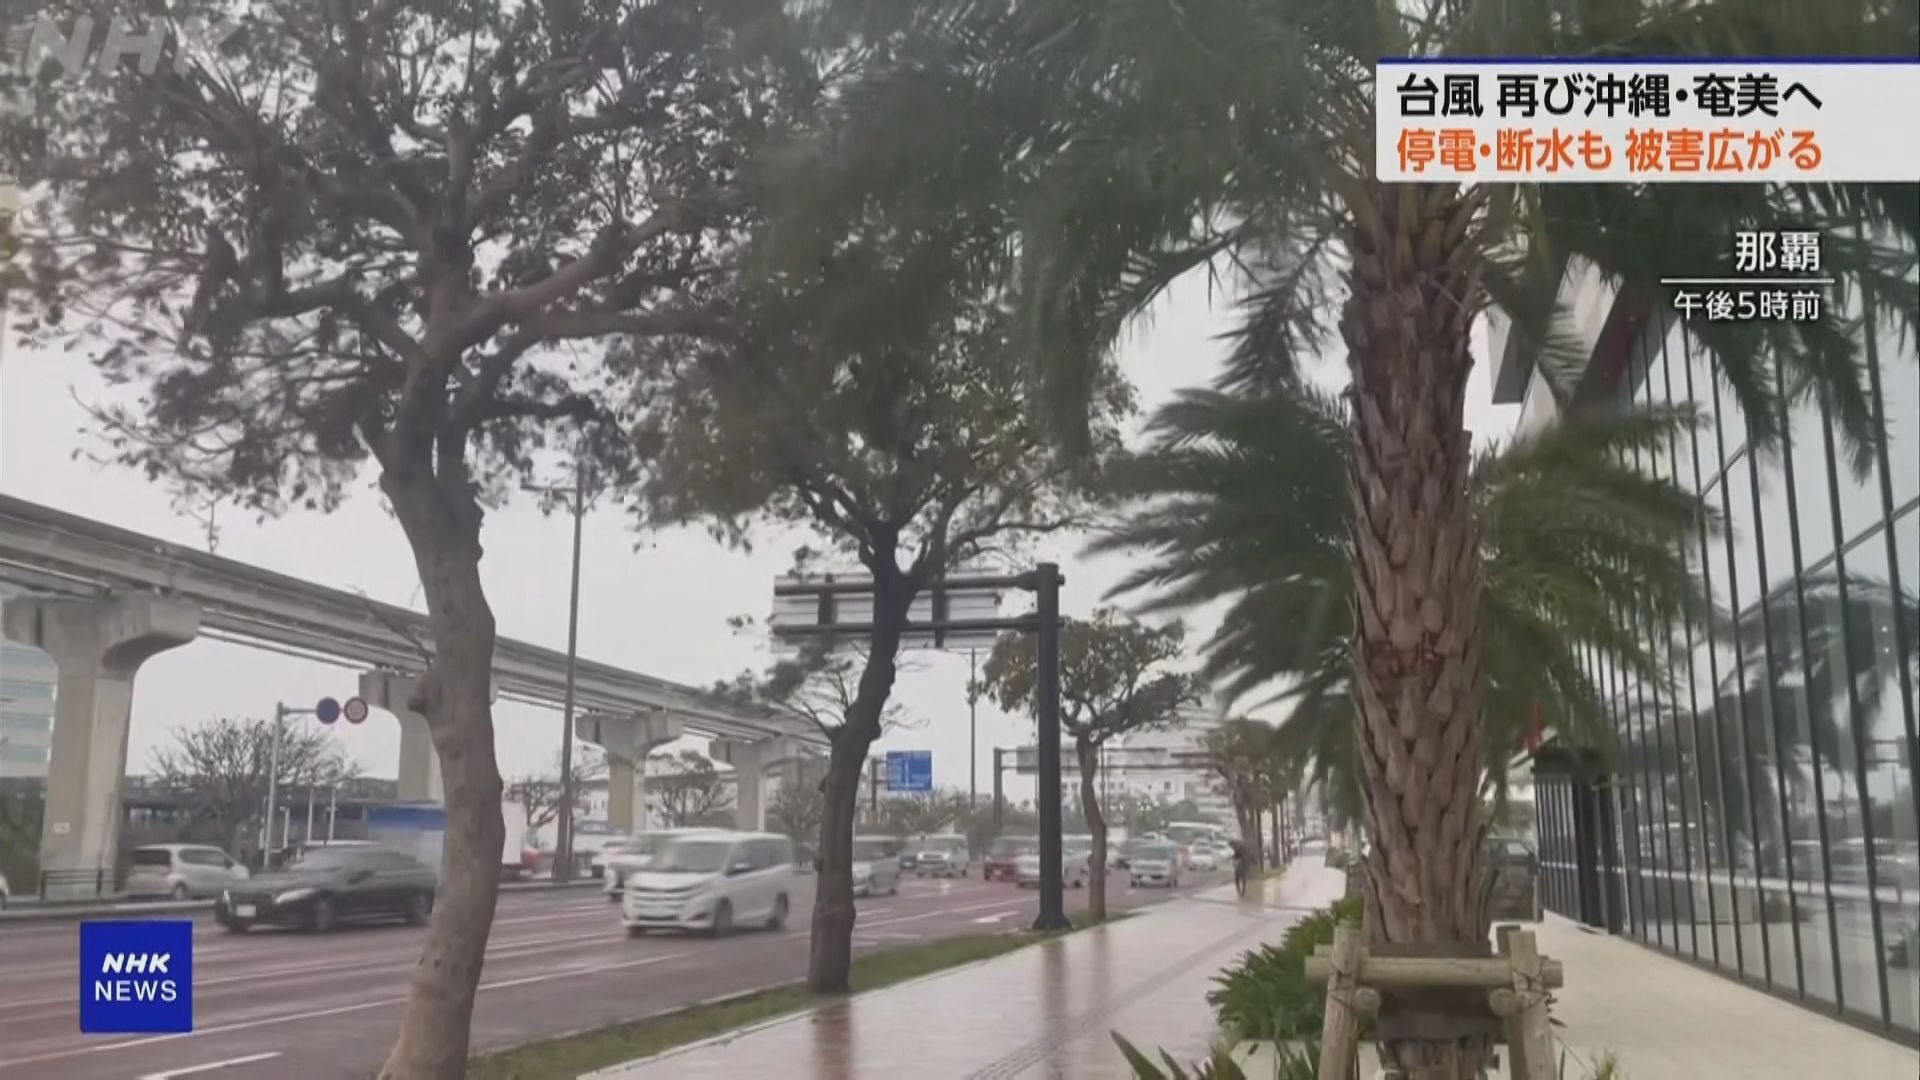 卡努向東移近沖繩 周末將有狂風暴雨